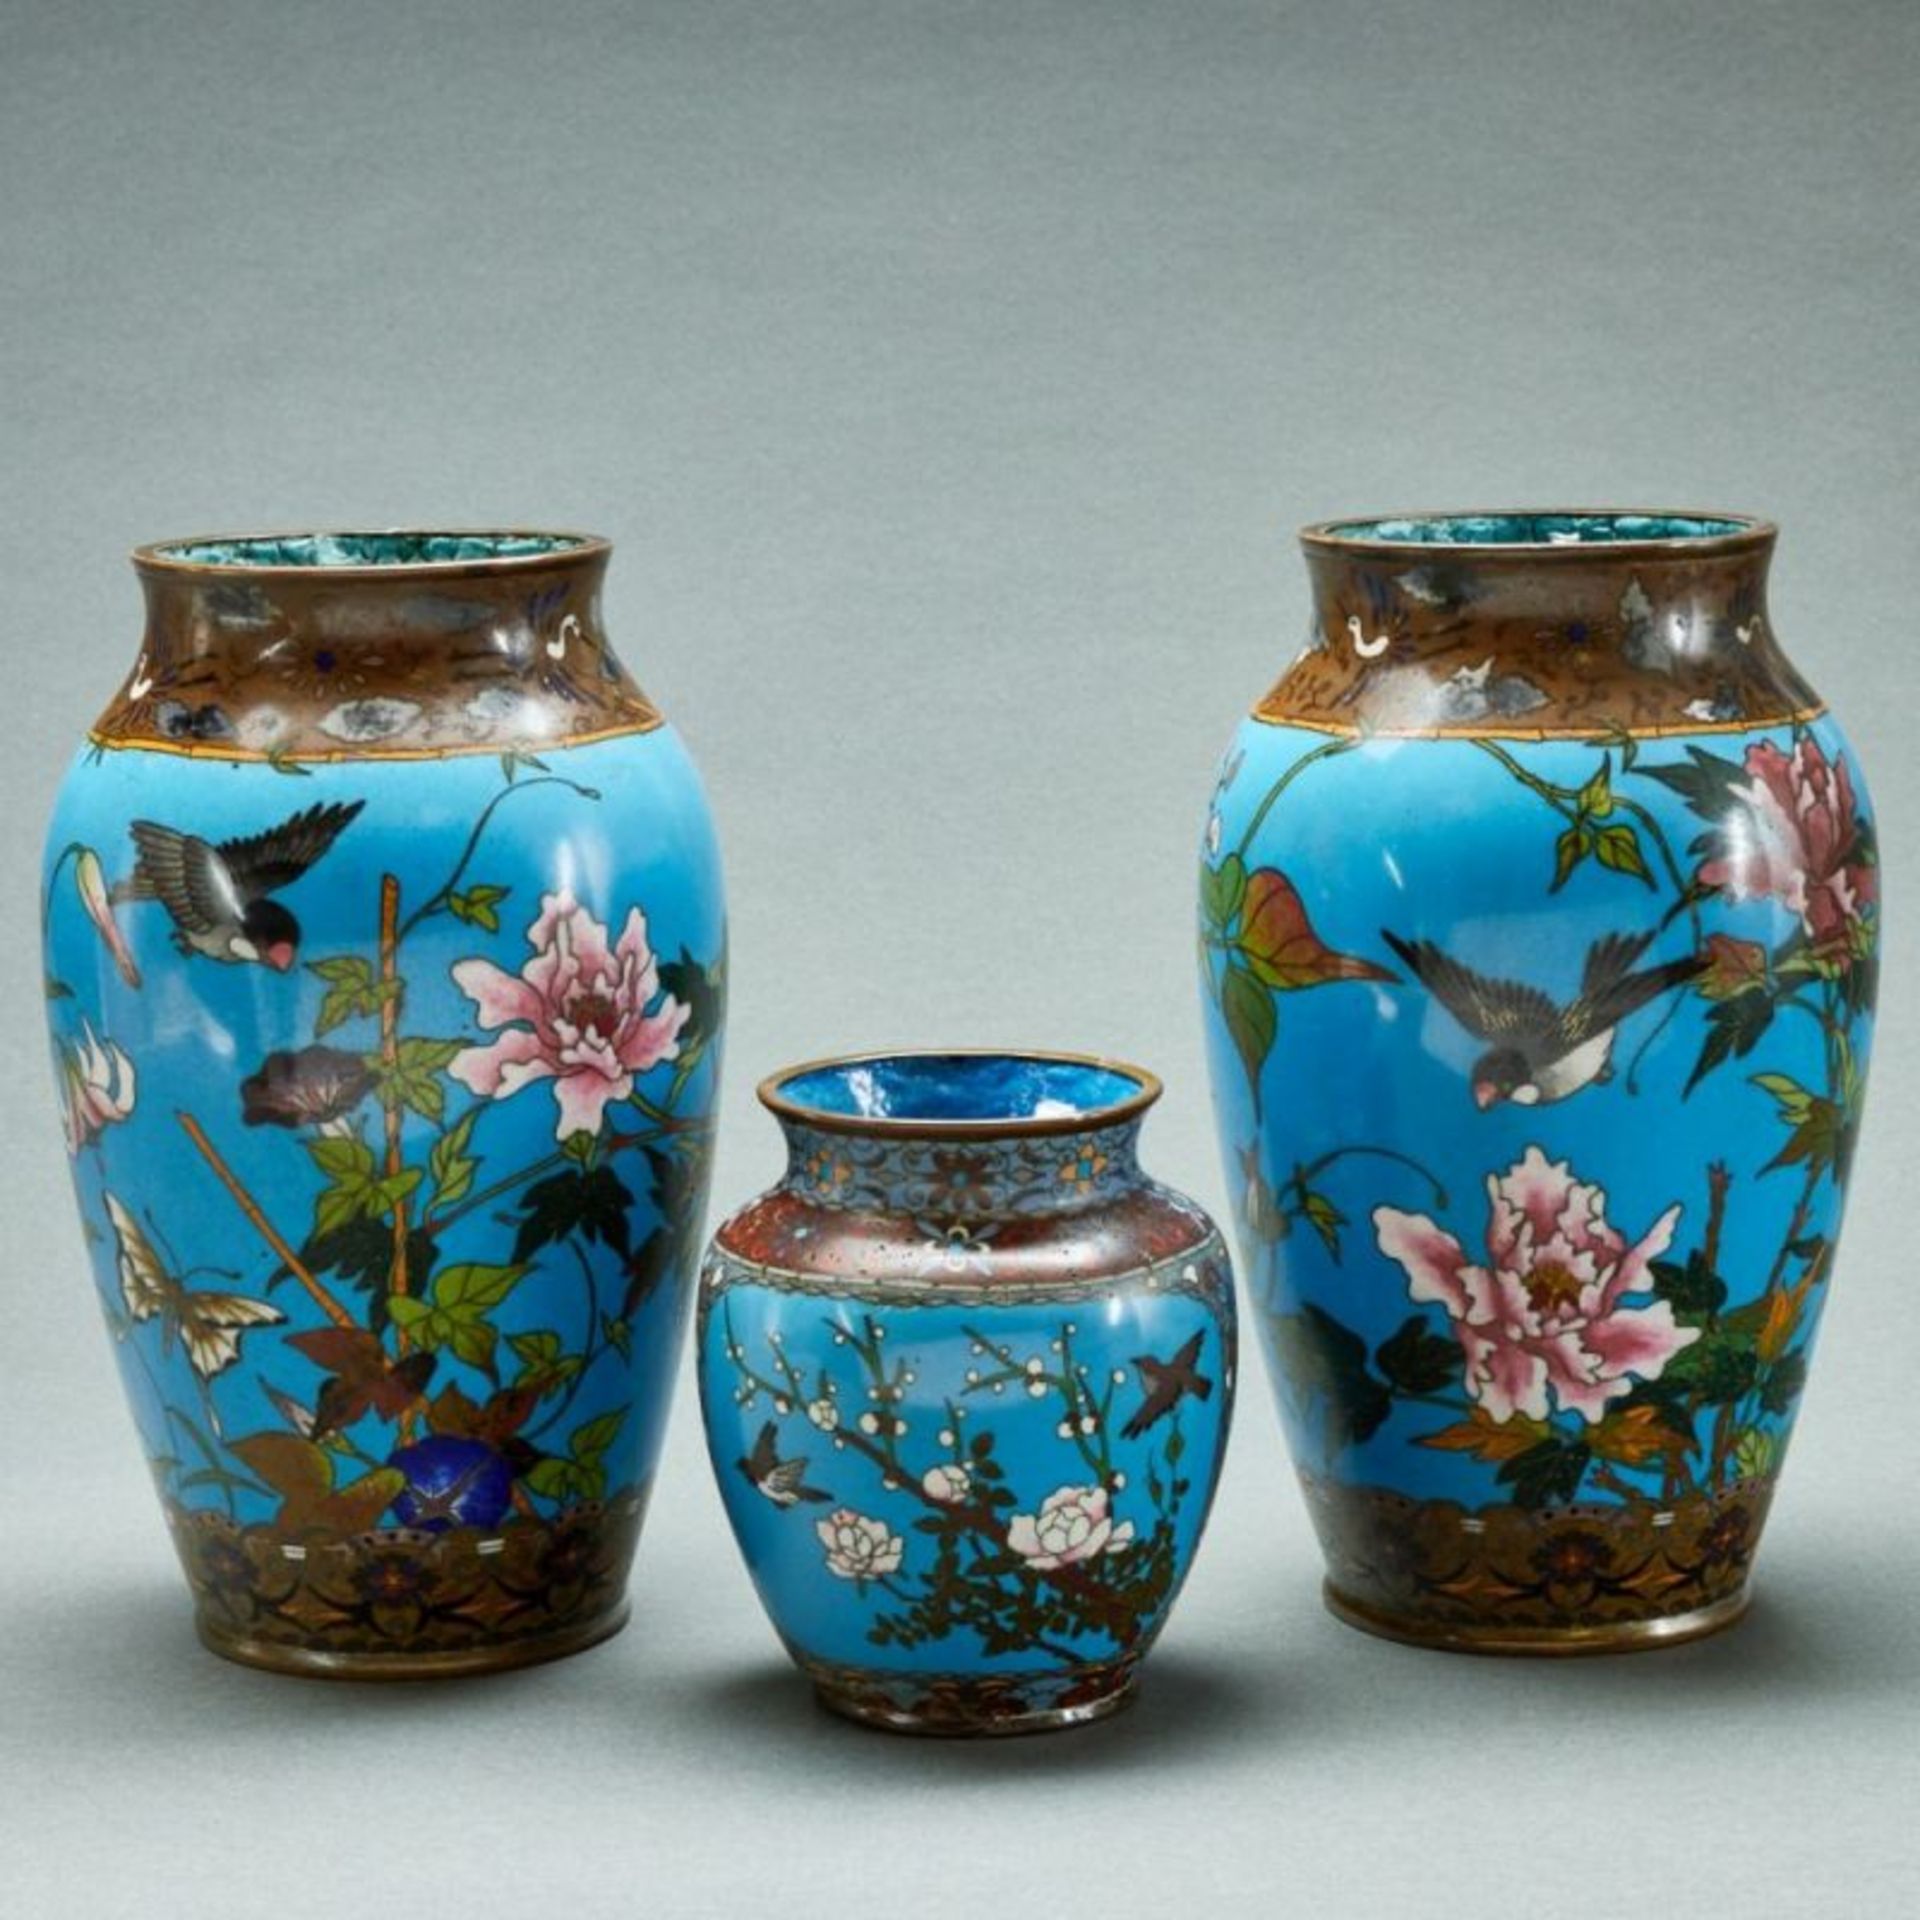 Paar Vasen und kleine Vase mit Vogeldekor, Japan, Meiji, Ende 19. Jahrhundert